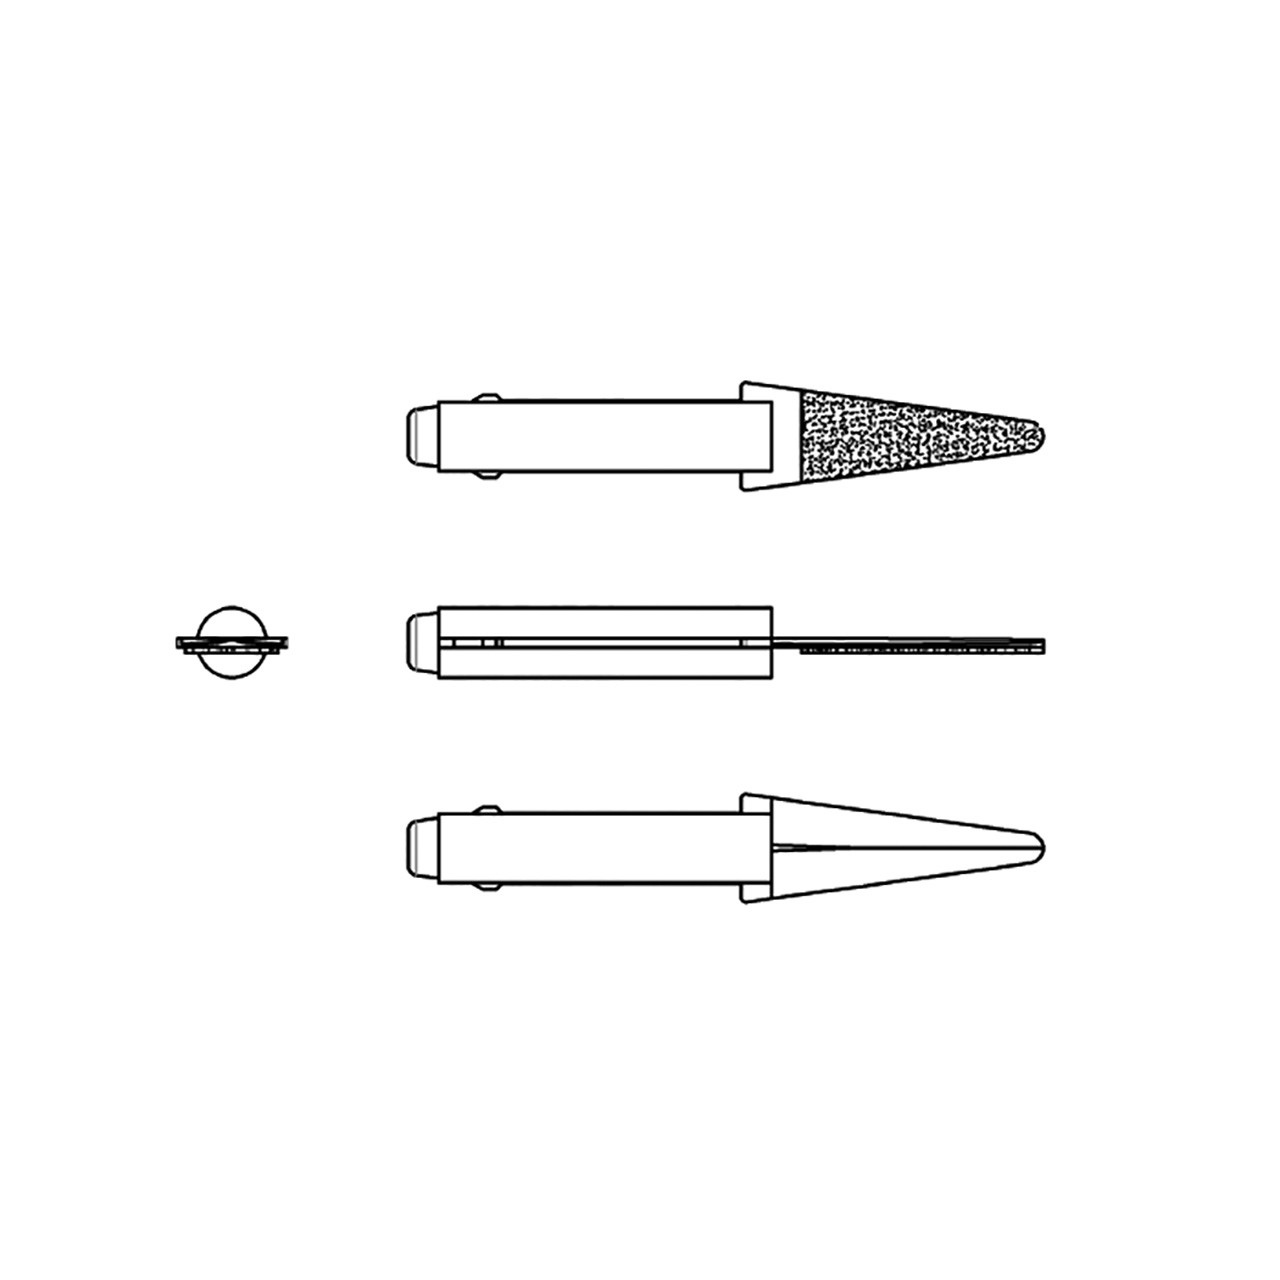 Mini-Filer Diamond Tips, 2mm Shank - Knife, D64 (Pkg. of 3)